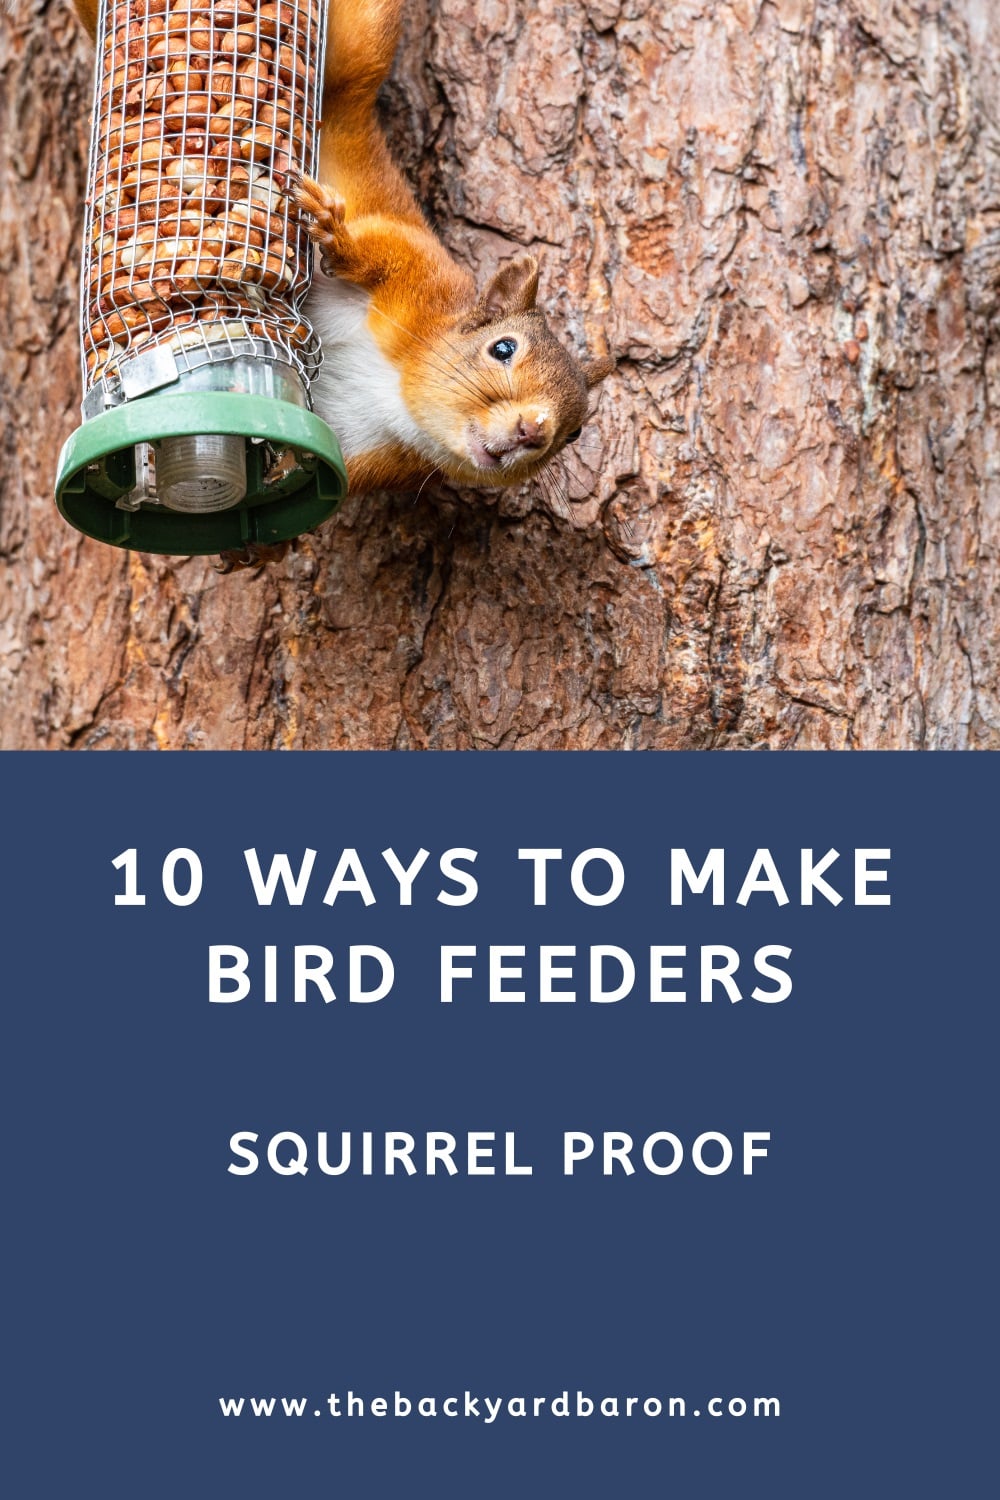 Squirrel proofing bird feeders (10 practical tips)